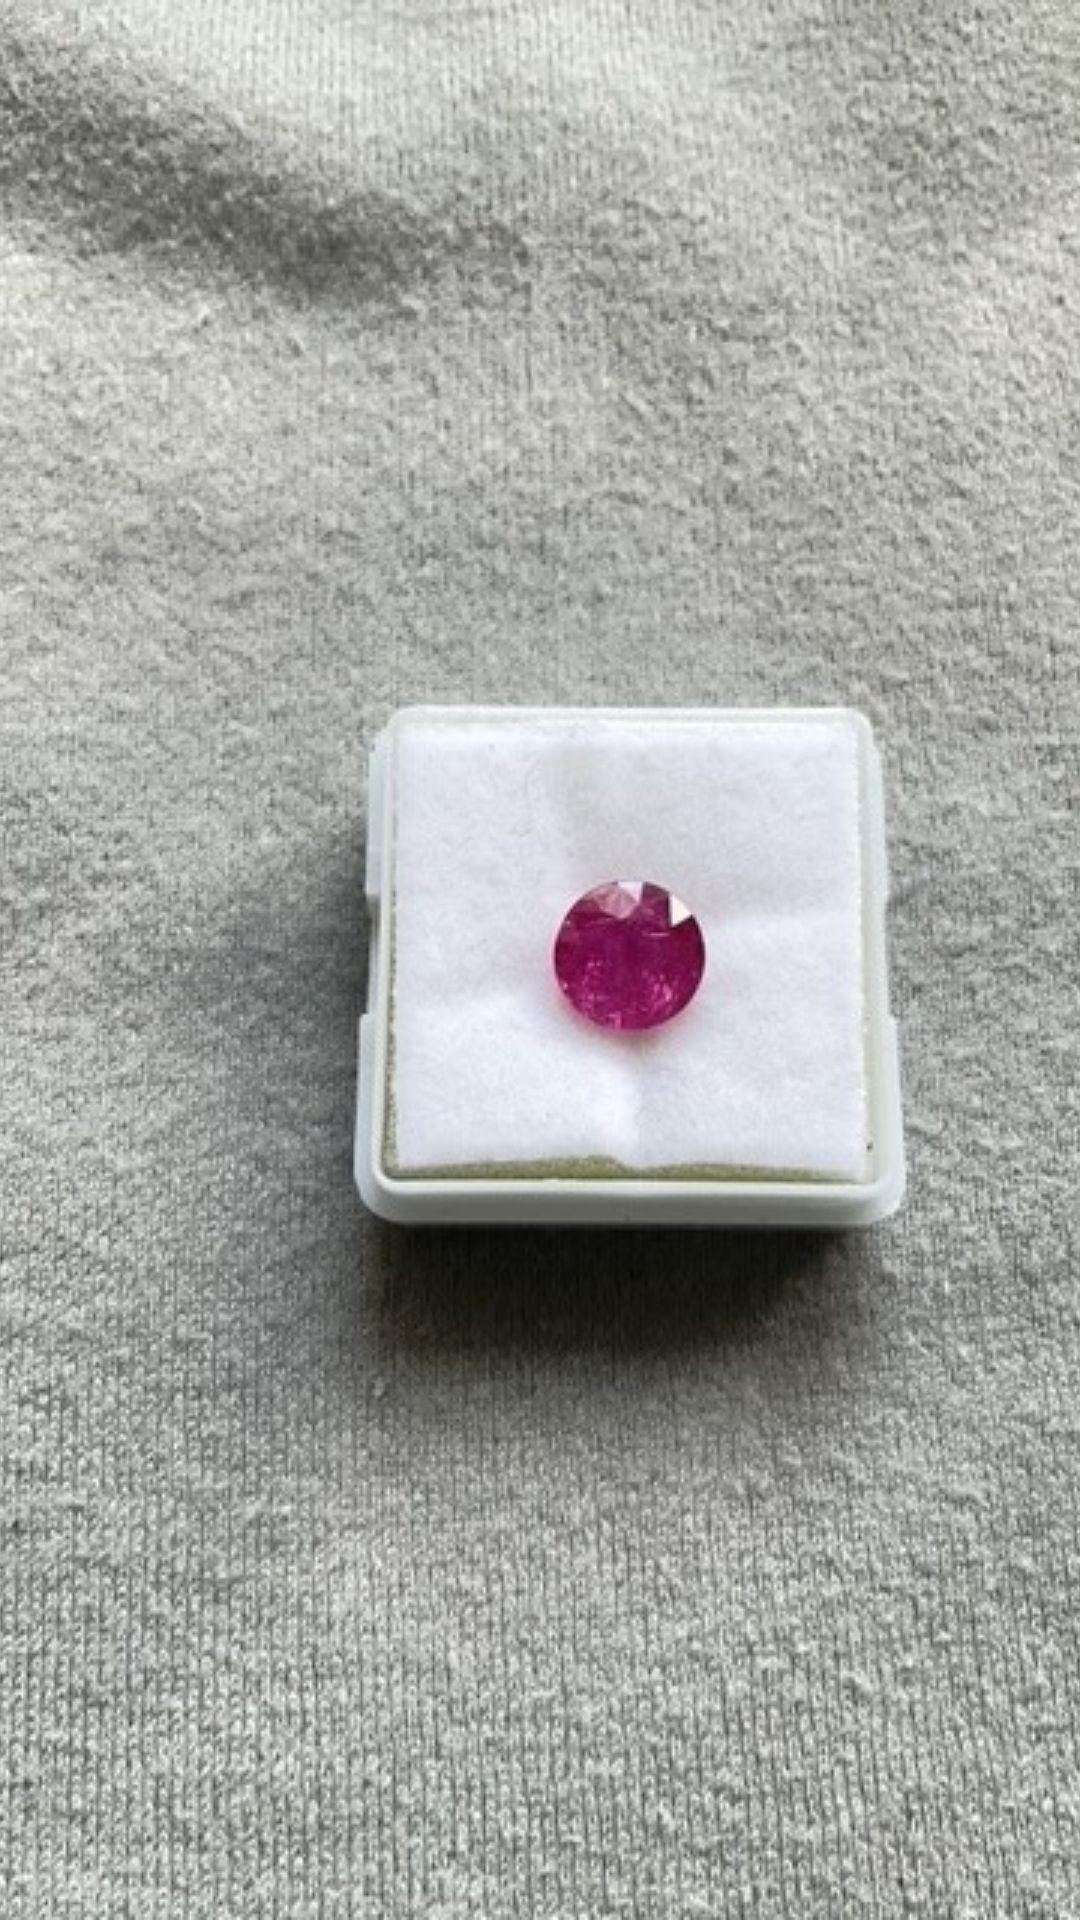 Taille ronde Pierre naturelle certifiée 3,02 carats rubis du Mozambique, taille ronde à facettes, sans chaleur en vente